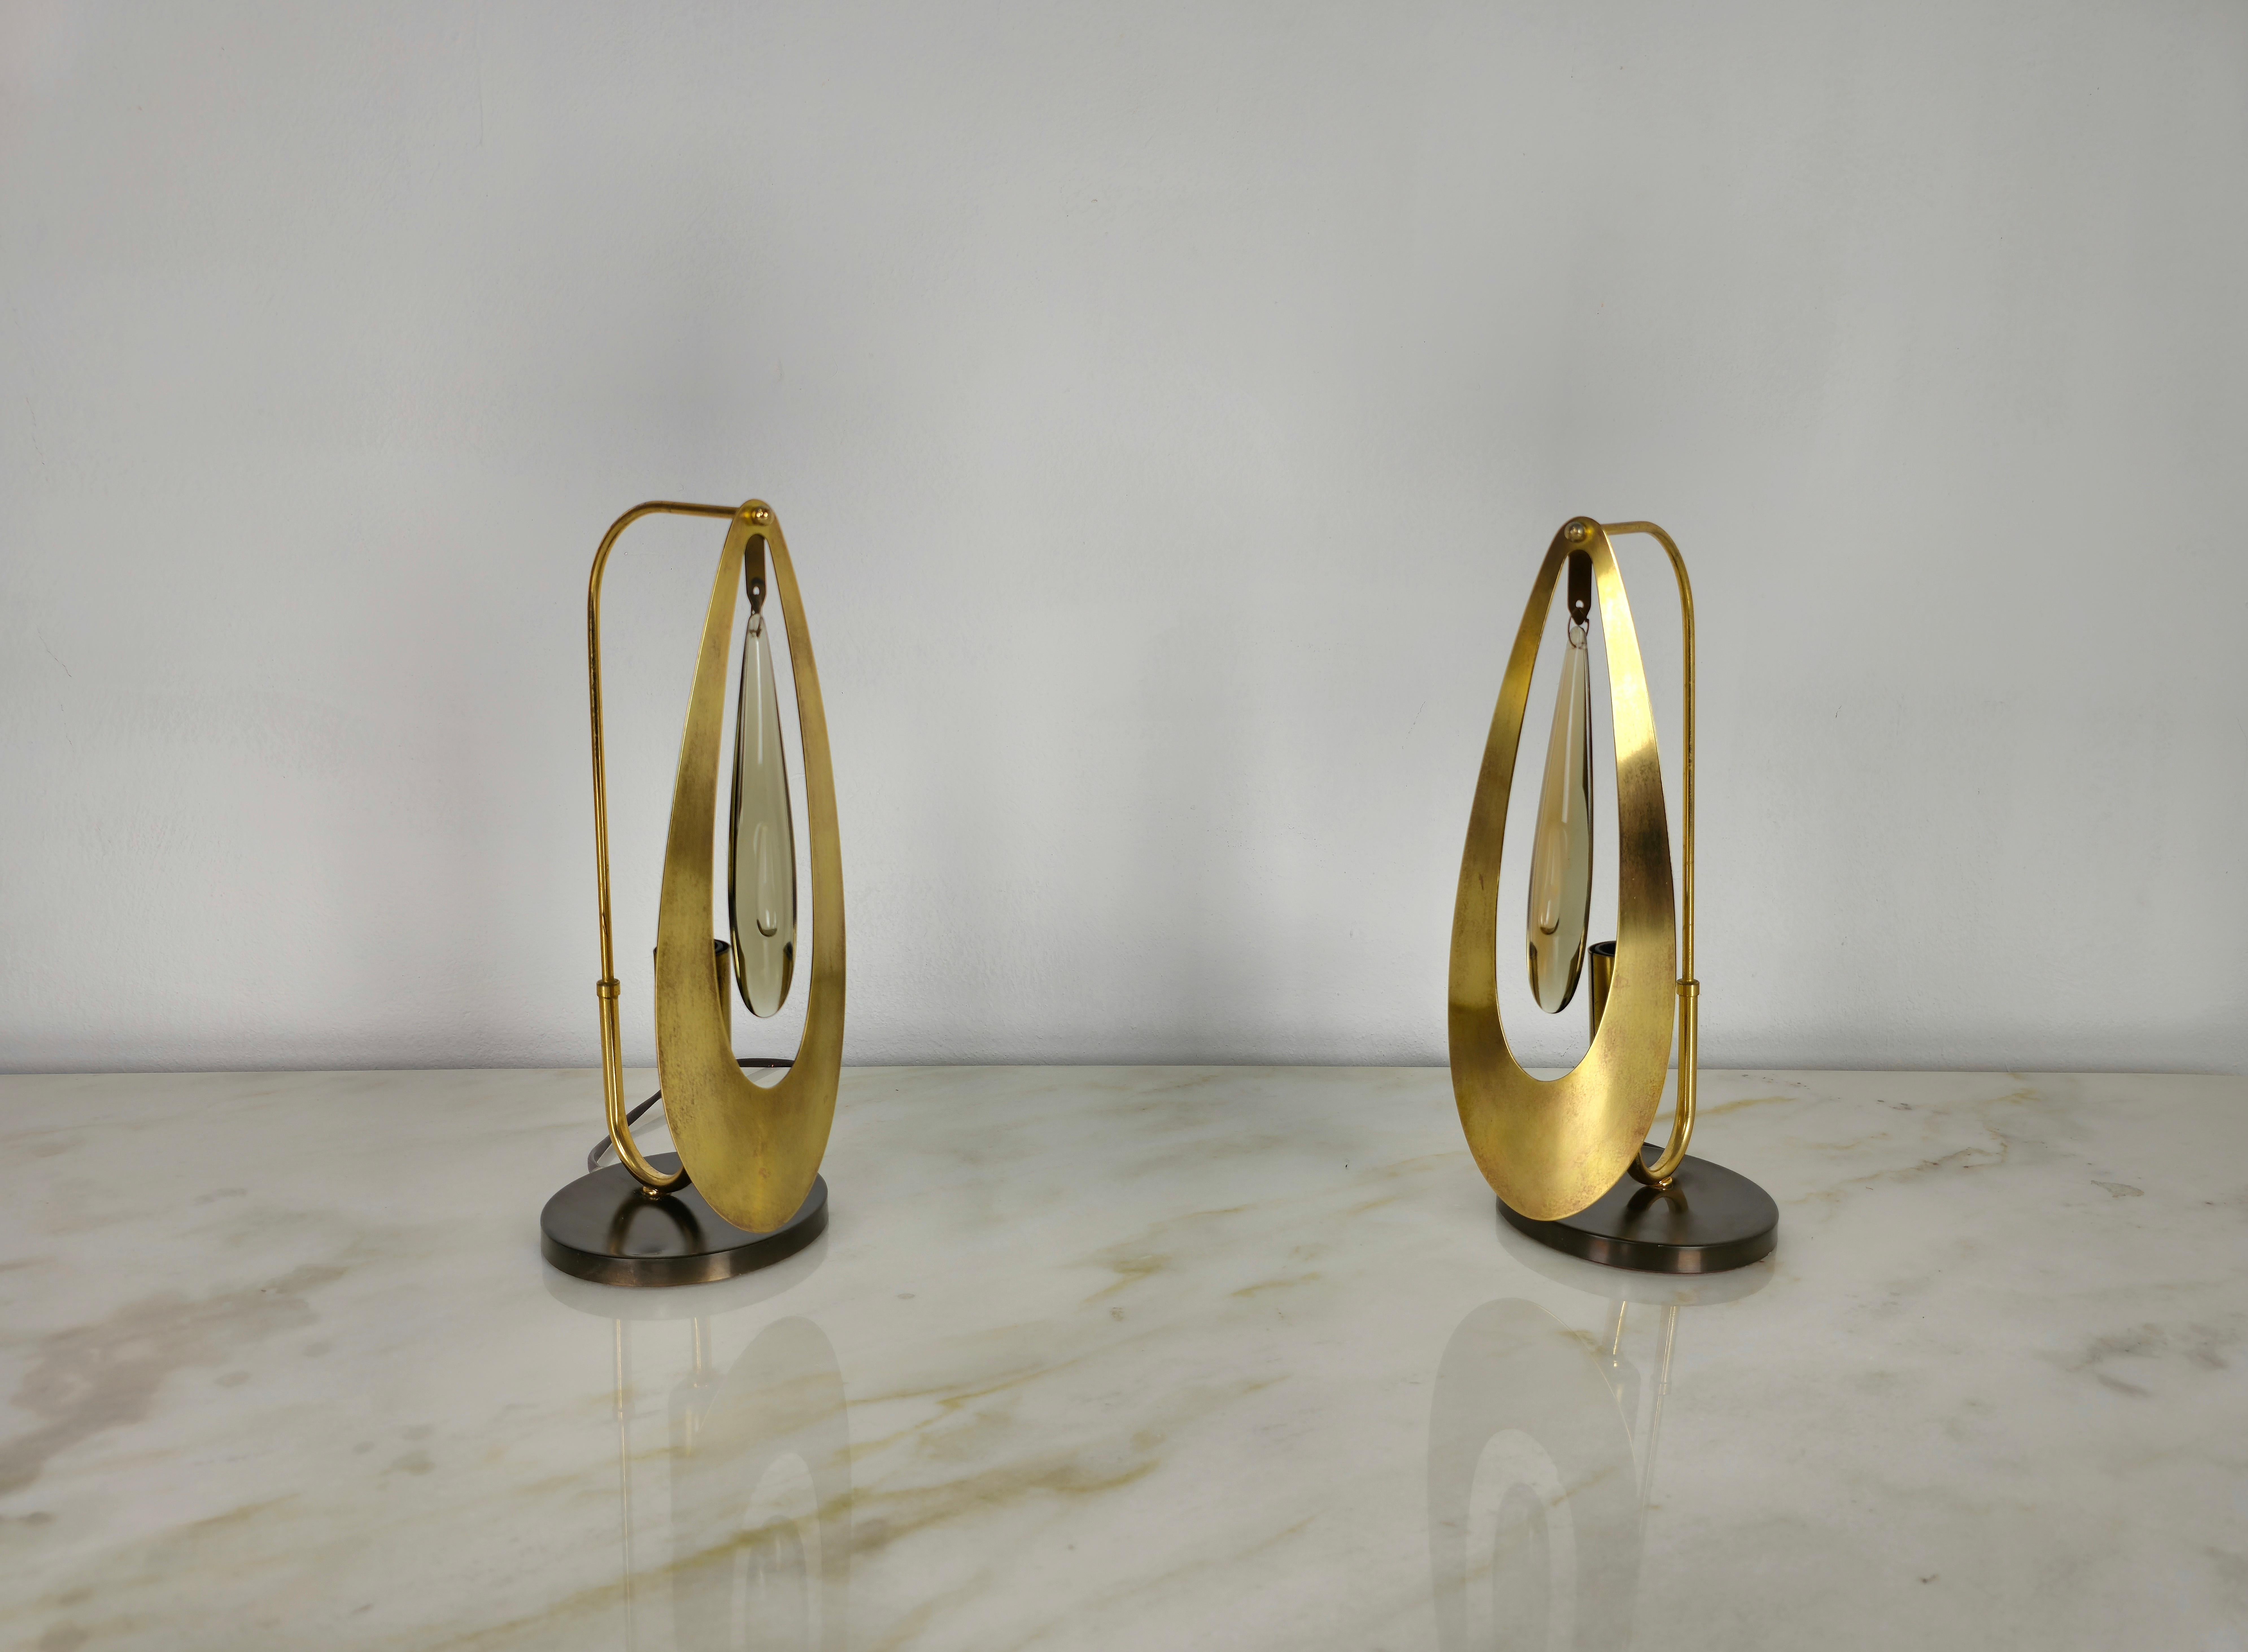 Rare et élégante paire de lampes de table fabriquées en Italie dans les années 1960/70.
Chaque lampe est composée d'une base circulaire en laiton bronzé, d'une structure métallique dorée incurvée, d'un pendentif en verre de cristal et d'une grande